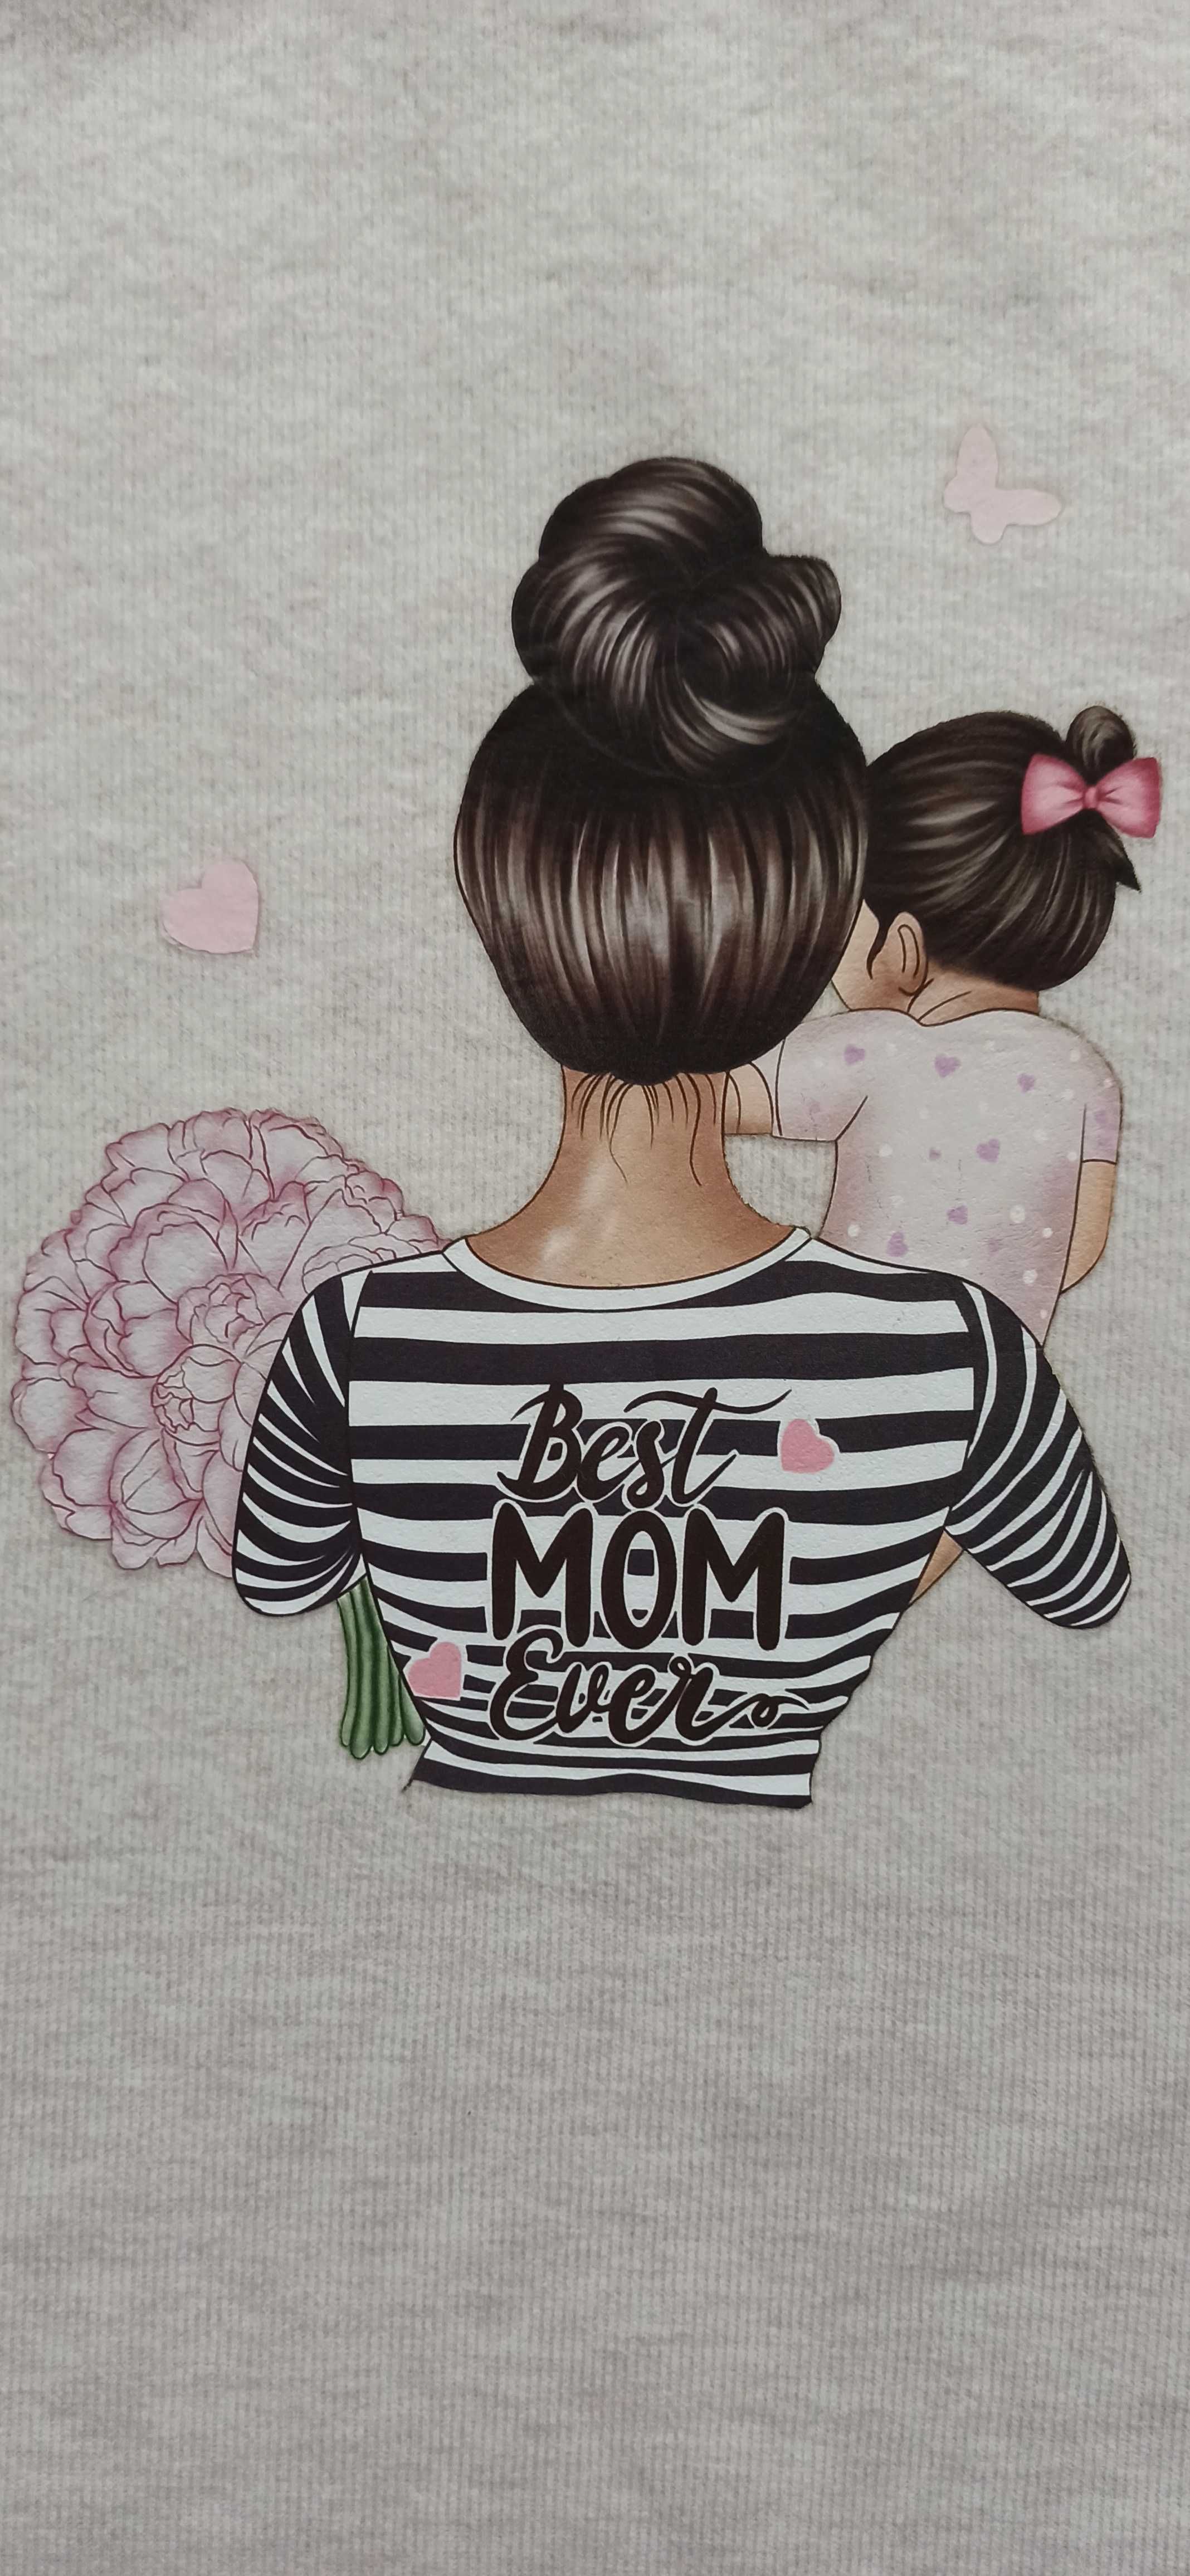 Camisola canelada e exclusiva - Best mom ever - Mãe e filha